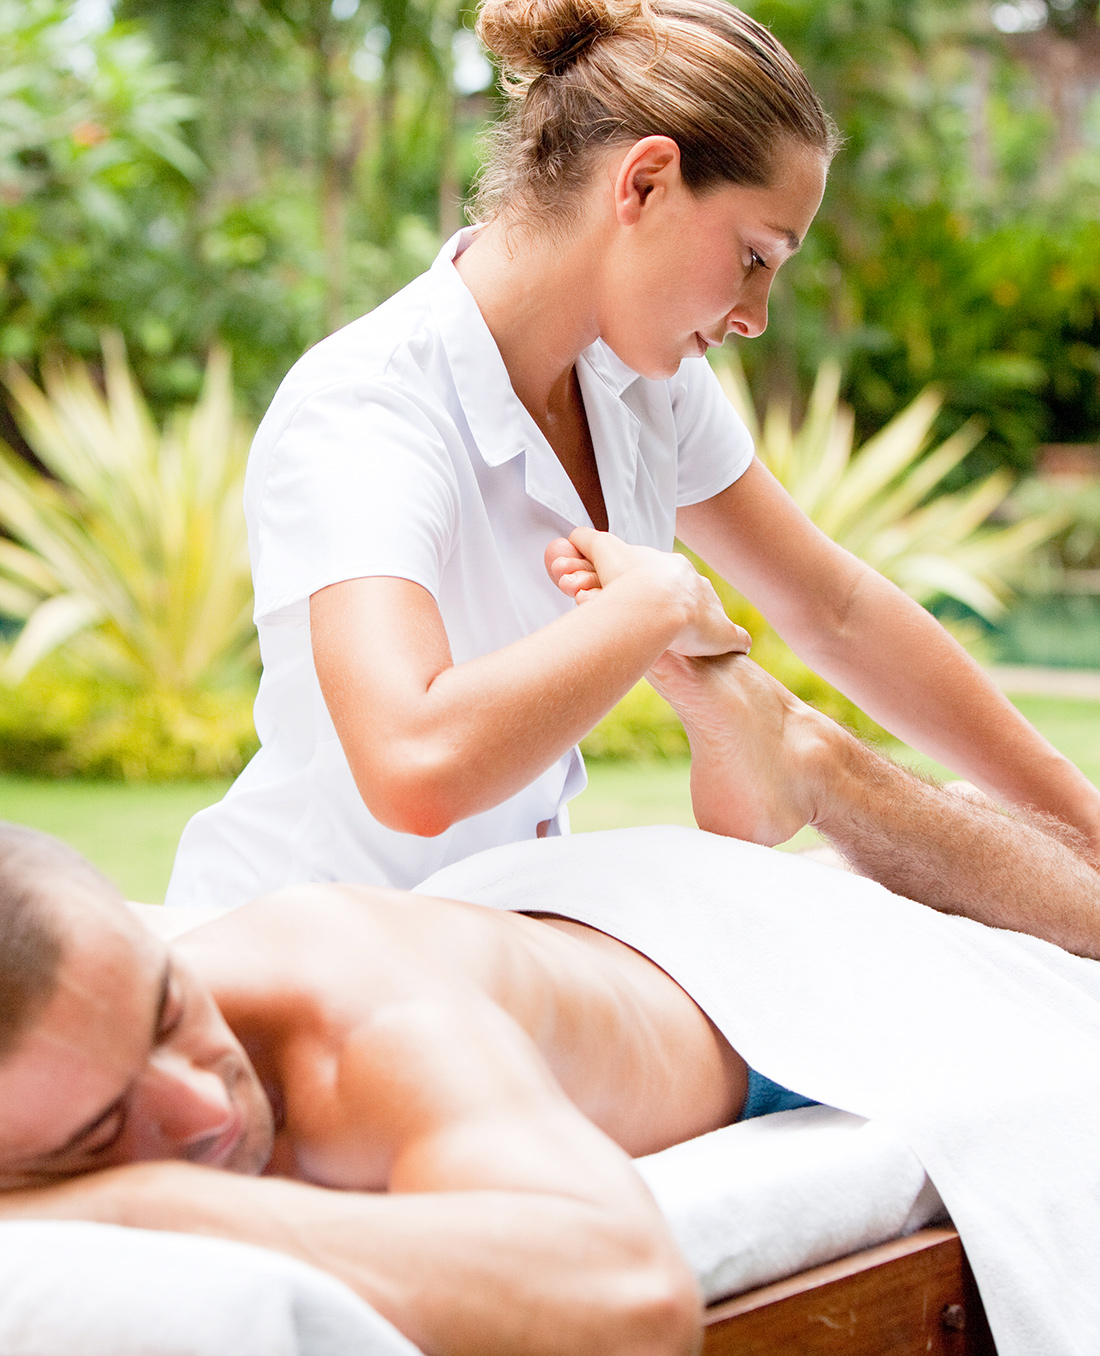 Deep Tissue Massage in Ibiza - Healing Massage Ibiza - Luxury mobile Massage and Beauty Service Ibiza - Ibiza Wellness Concierge - Beauty ibiza, kinesiology ibiza, massage ibiza, yoga ibiza